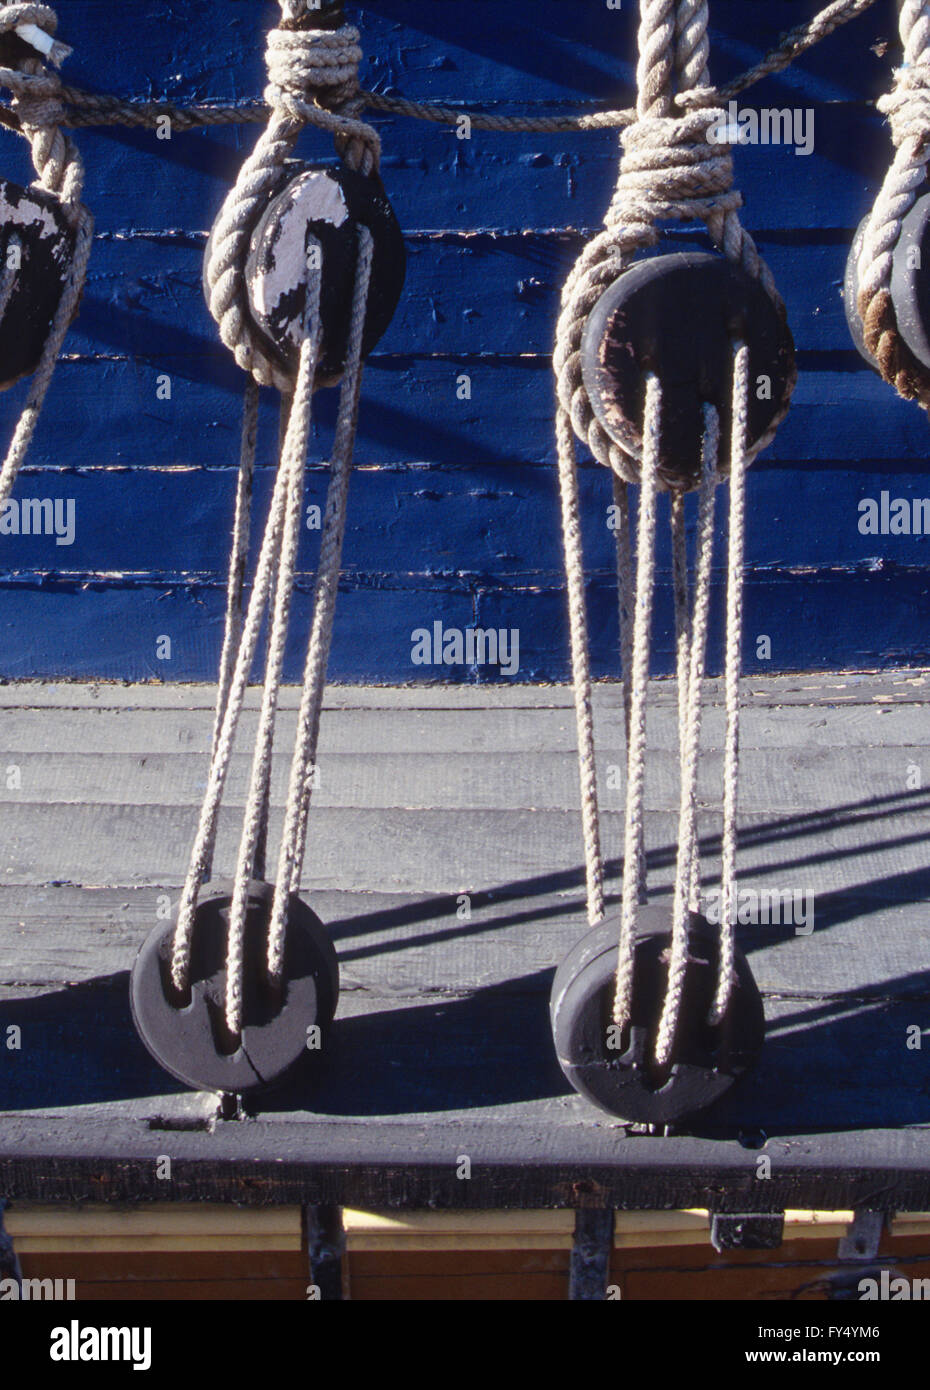 Nahaufnahme der Segel Takelagen auf historischen Segelboot; Schoner; Cape Town Hafen; Kap-Halbinsel; Südafrika Stockfoto